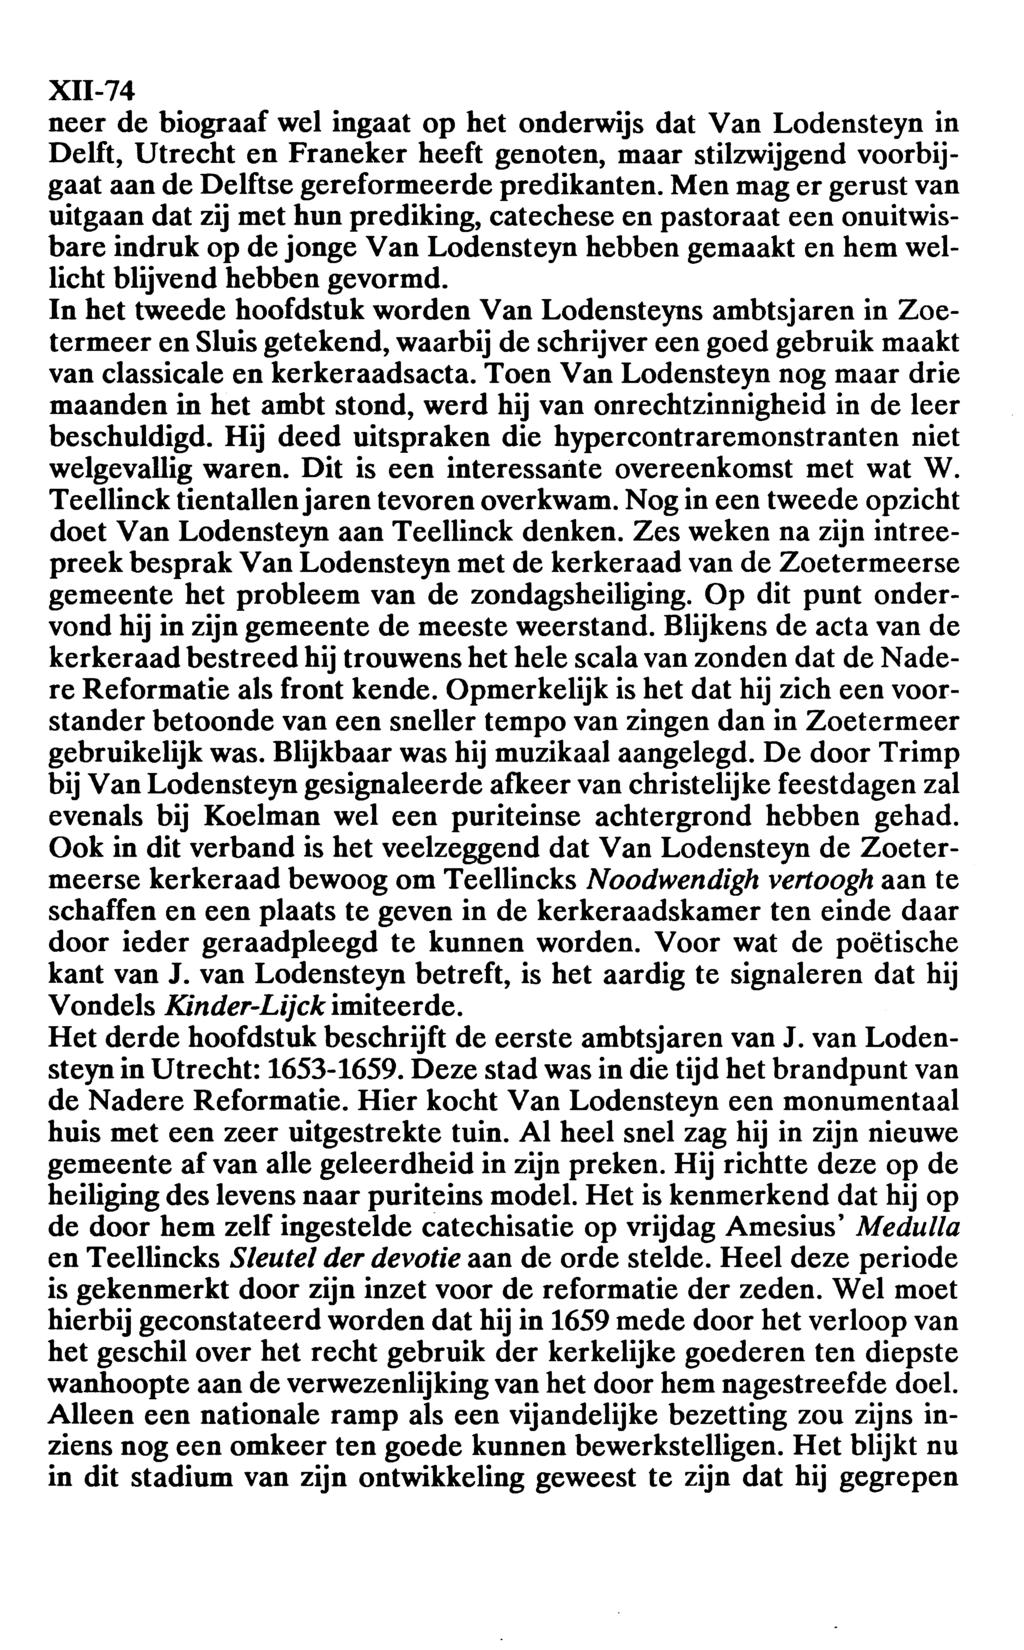 XII-74 neer de biograaf wel ingaat op het onderwijs dat Van Lodensteyn in Delft, Utrecht en Franeker heeft genoten, maar stilzwijgend voorbijgaat aan de Delftse gereformeerde predikanten.